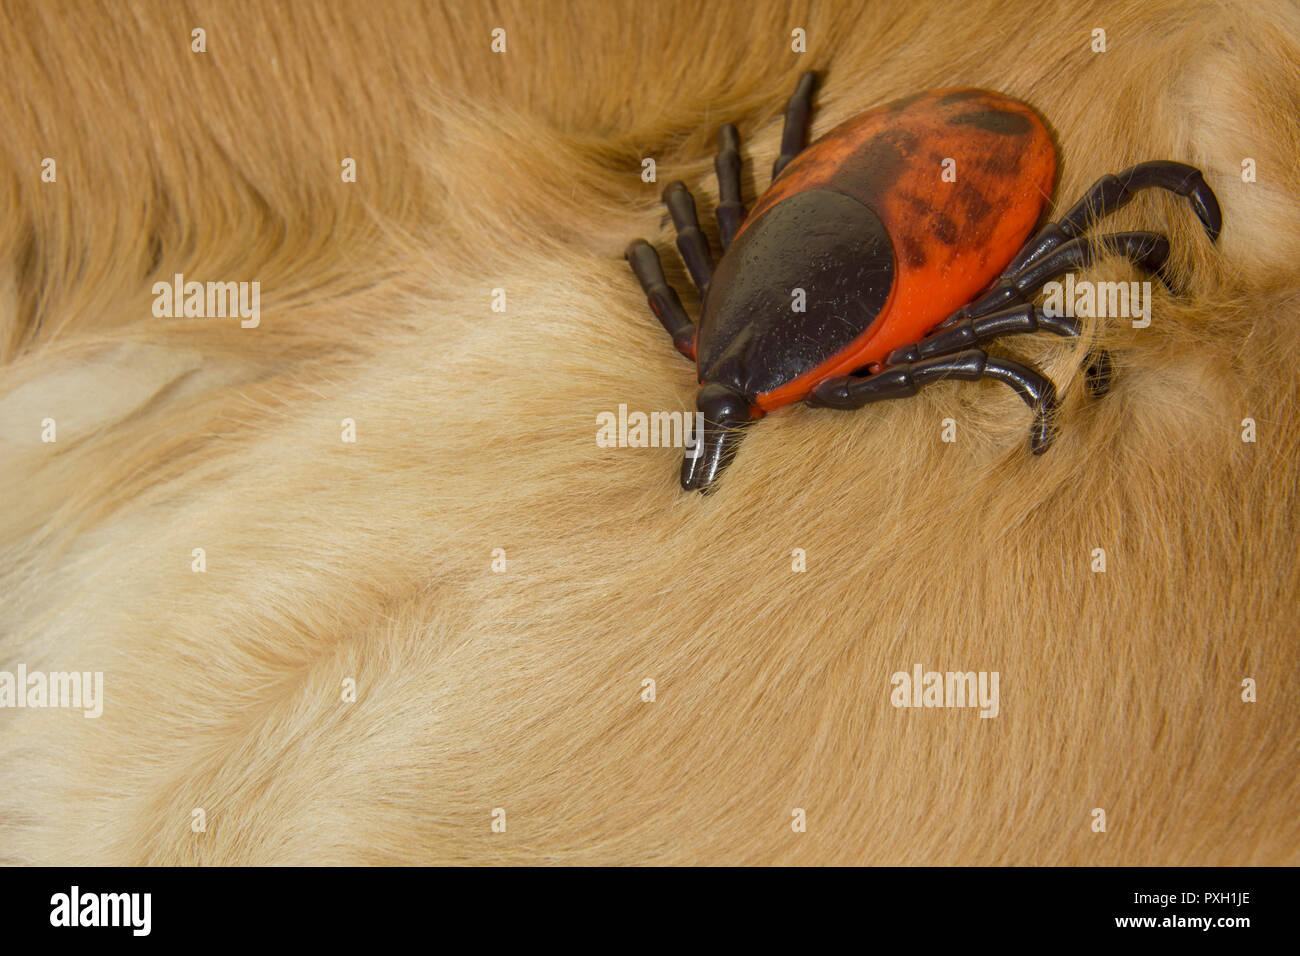 Große künstliche Enzephalitis Zecken auf der Pelz der Golden Retriever Hund Stockfoto